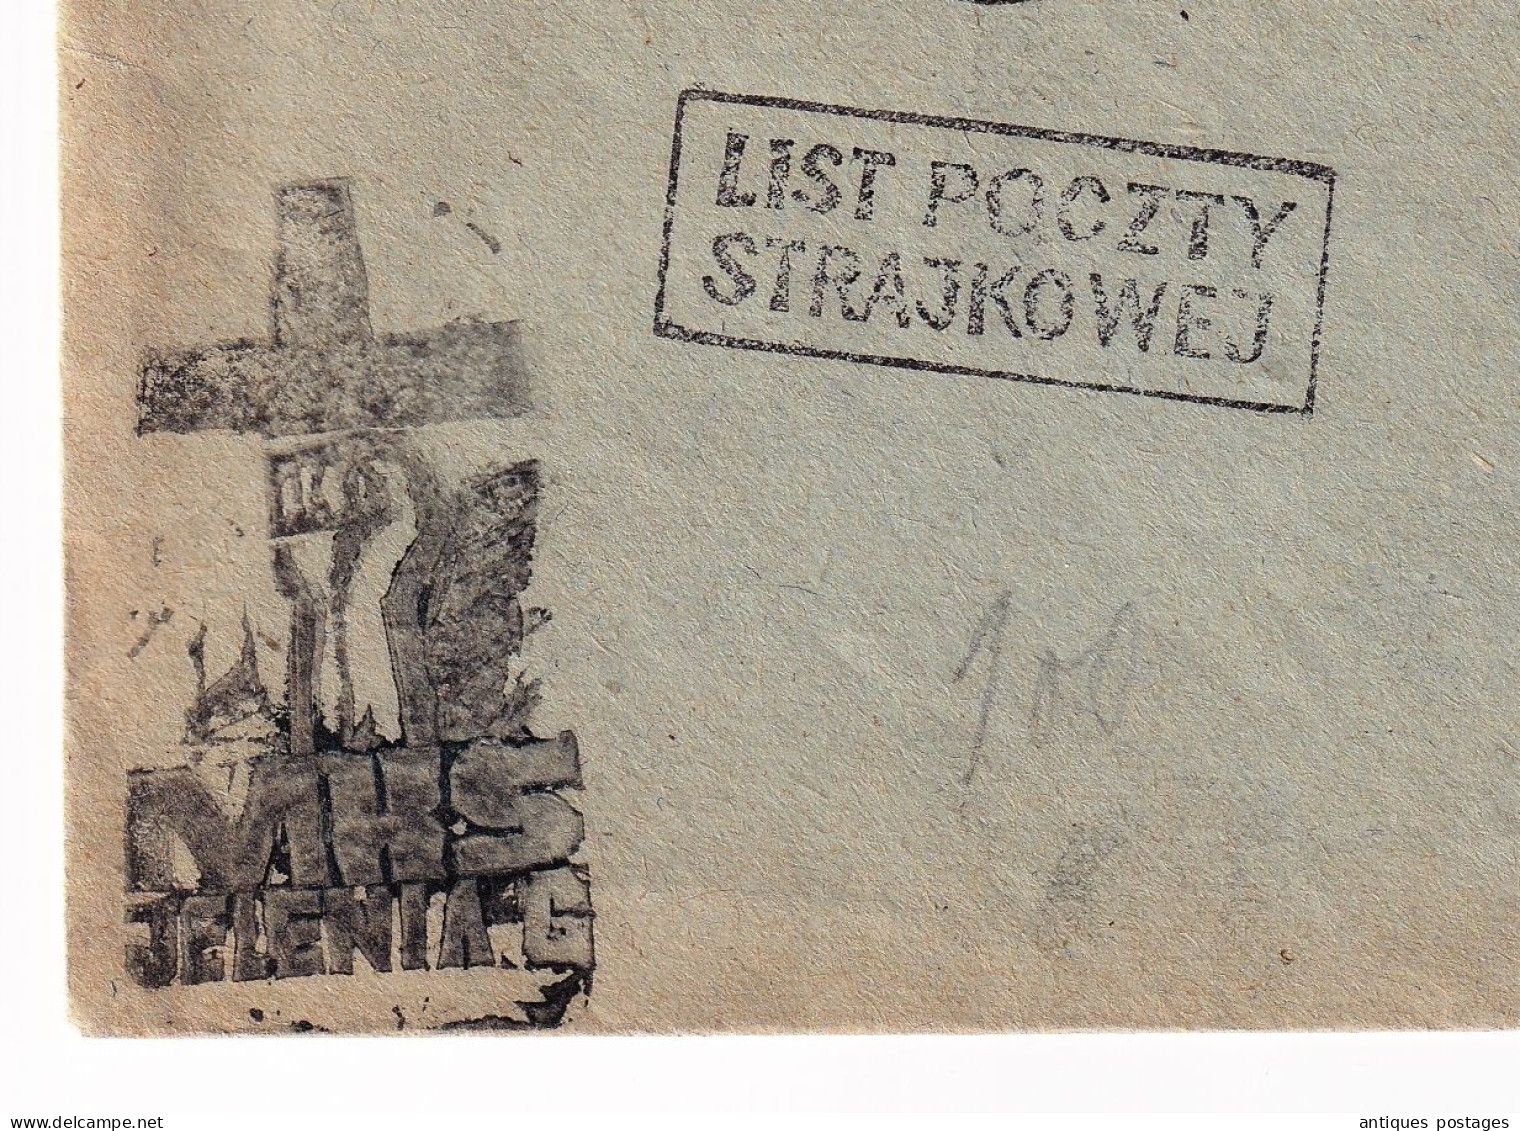 Lettre POCZTA STRAJKOWA Jelenia Góra 22 -1-1981 MKS Solidarność List Poczty Strajkowej Pologne Poland Polska - Cartas & Documentos